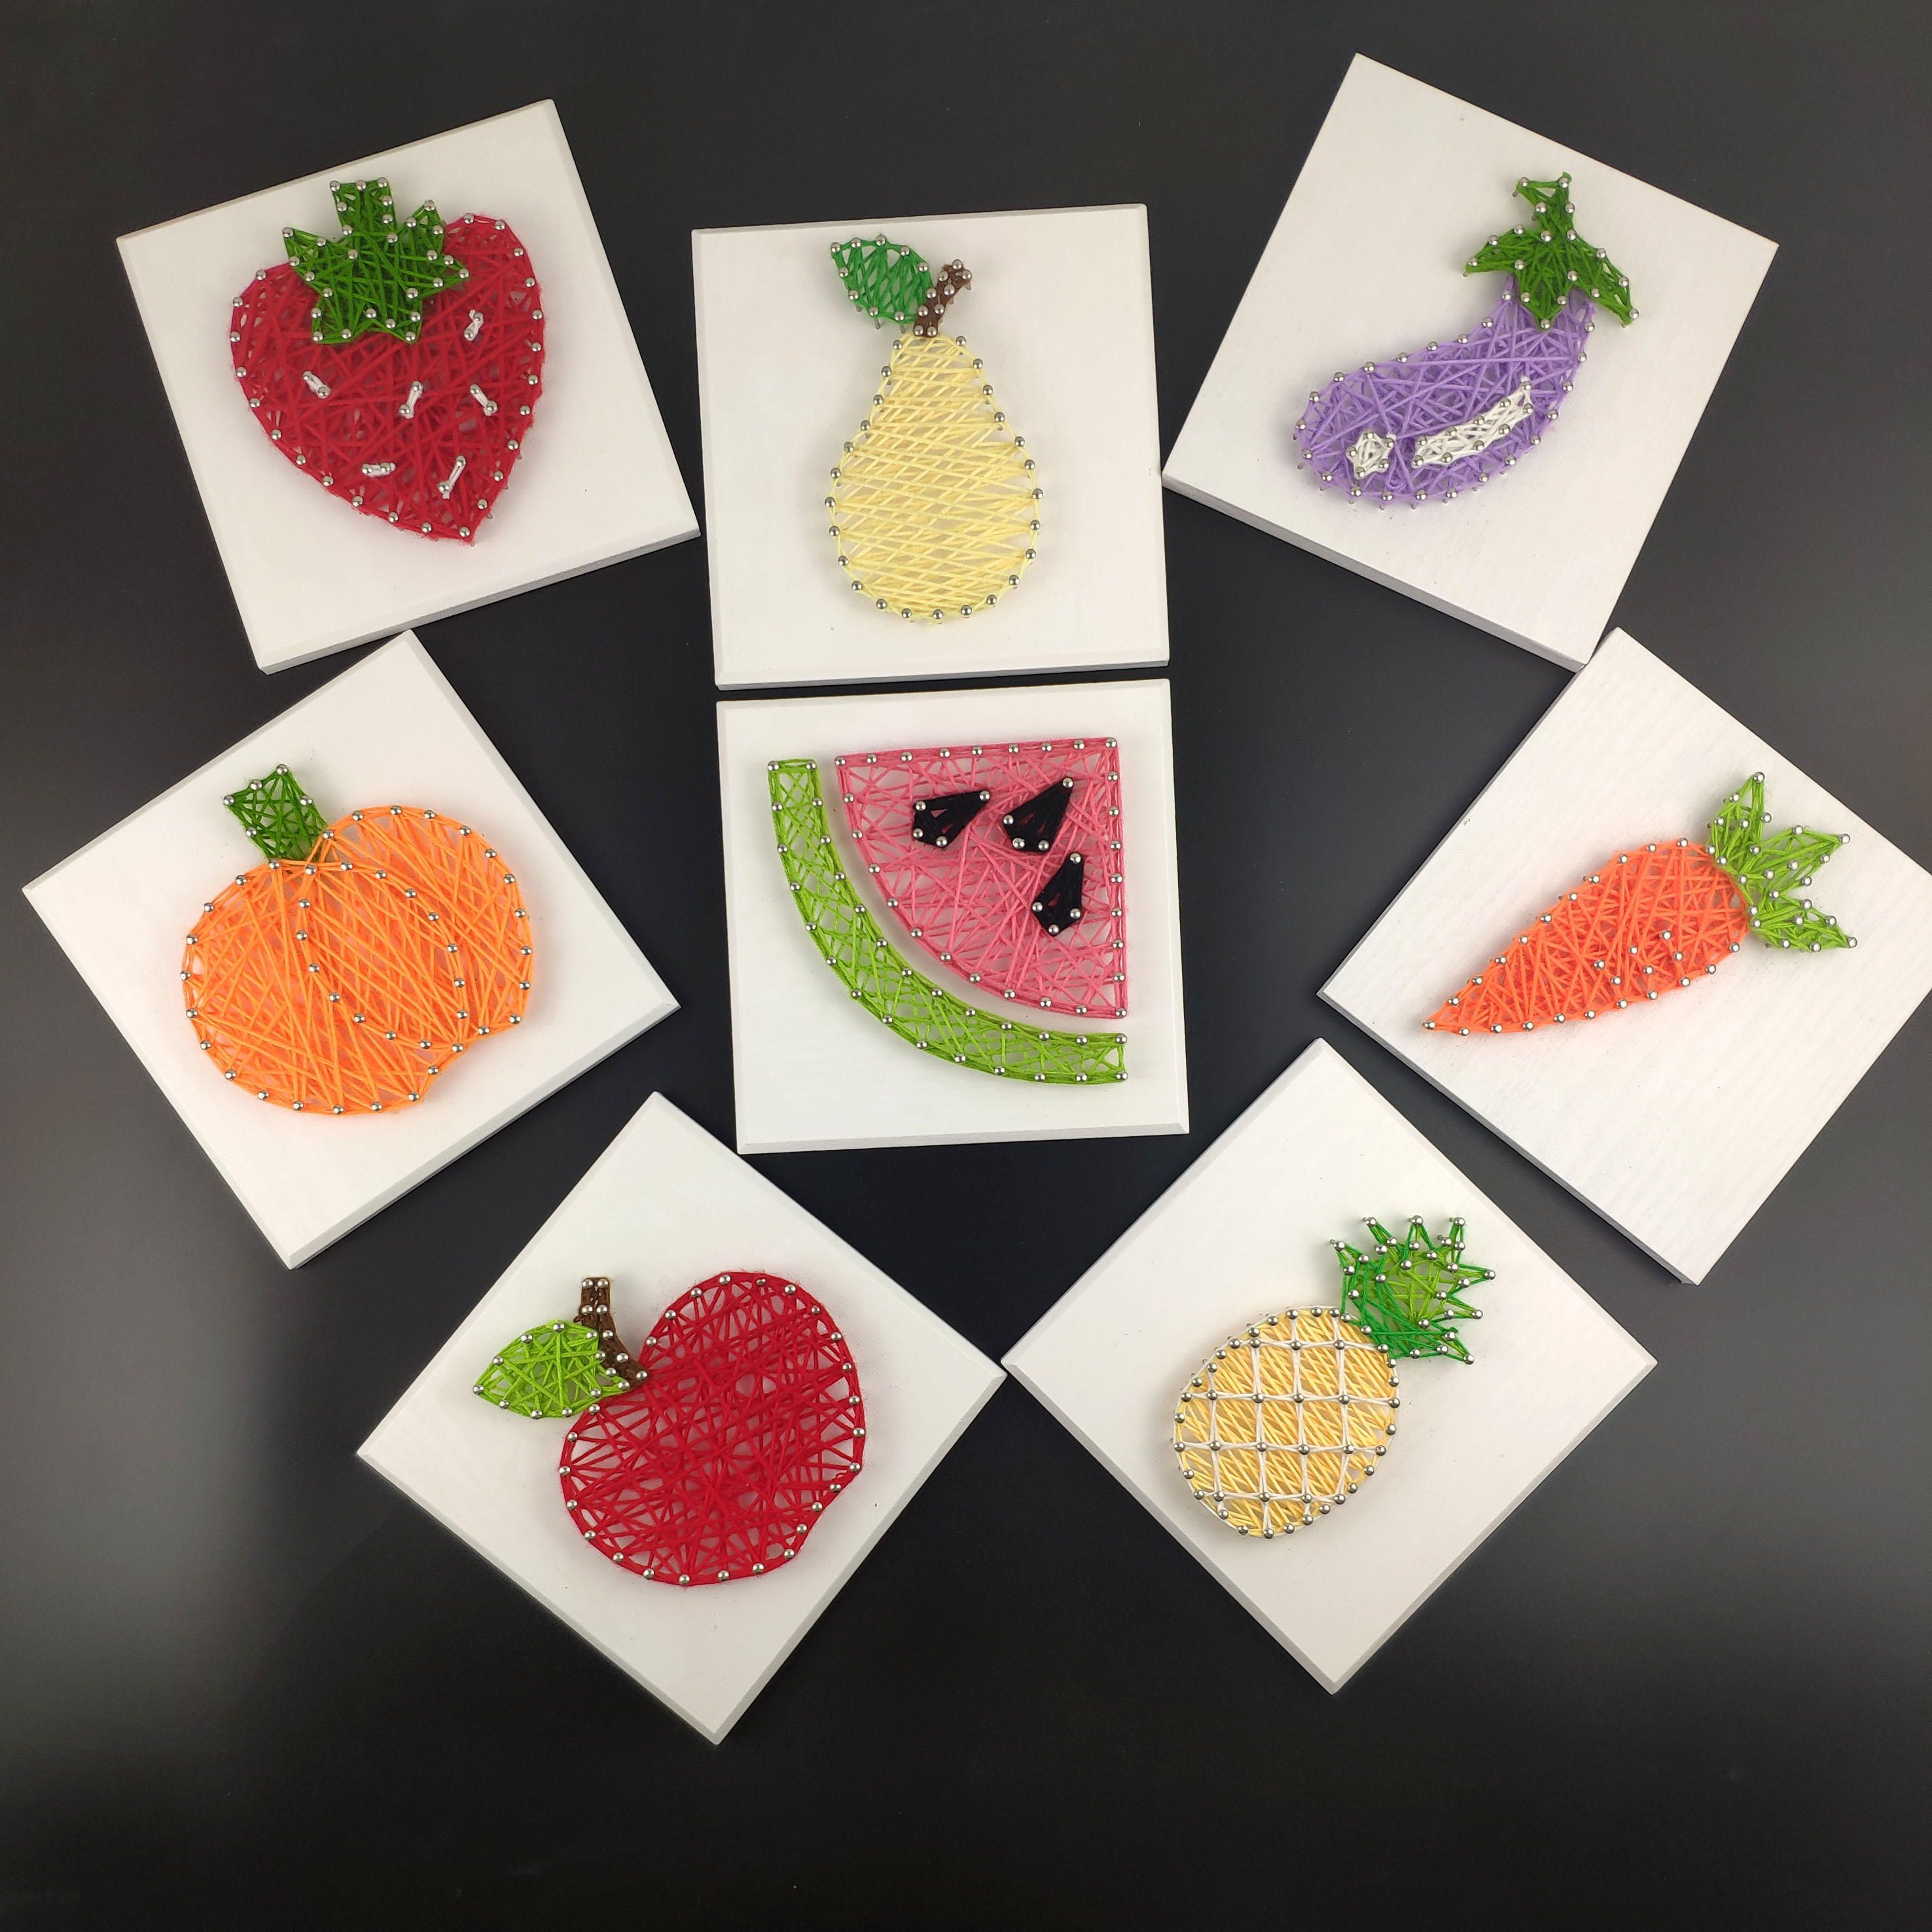 蔬果钉子绕线画立体纱线画diy手工创意制作礼品幼儿园材料包办公